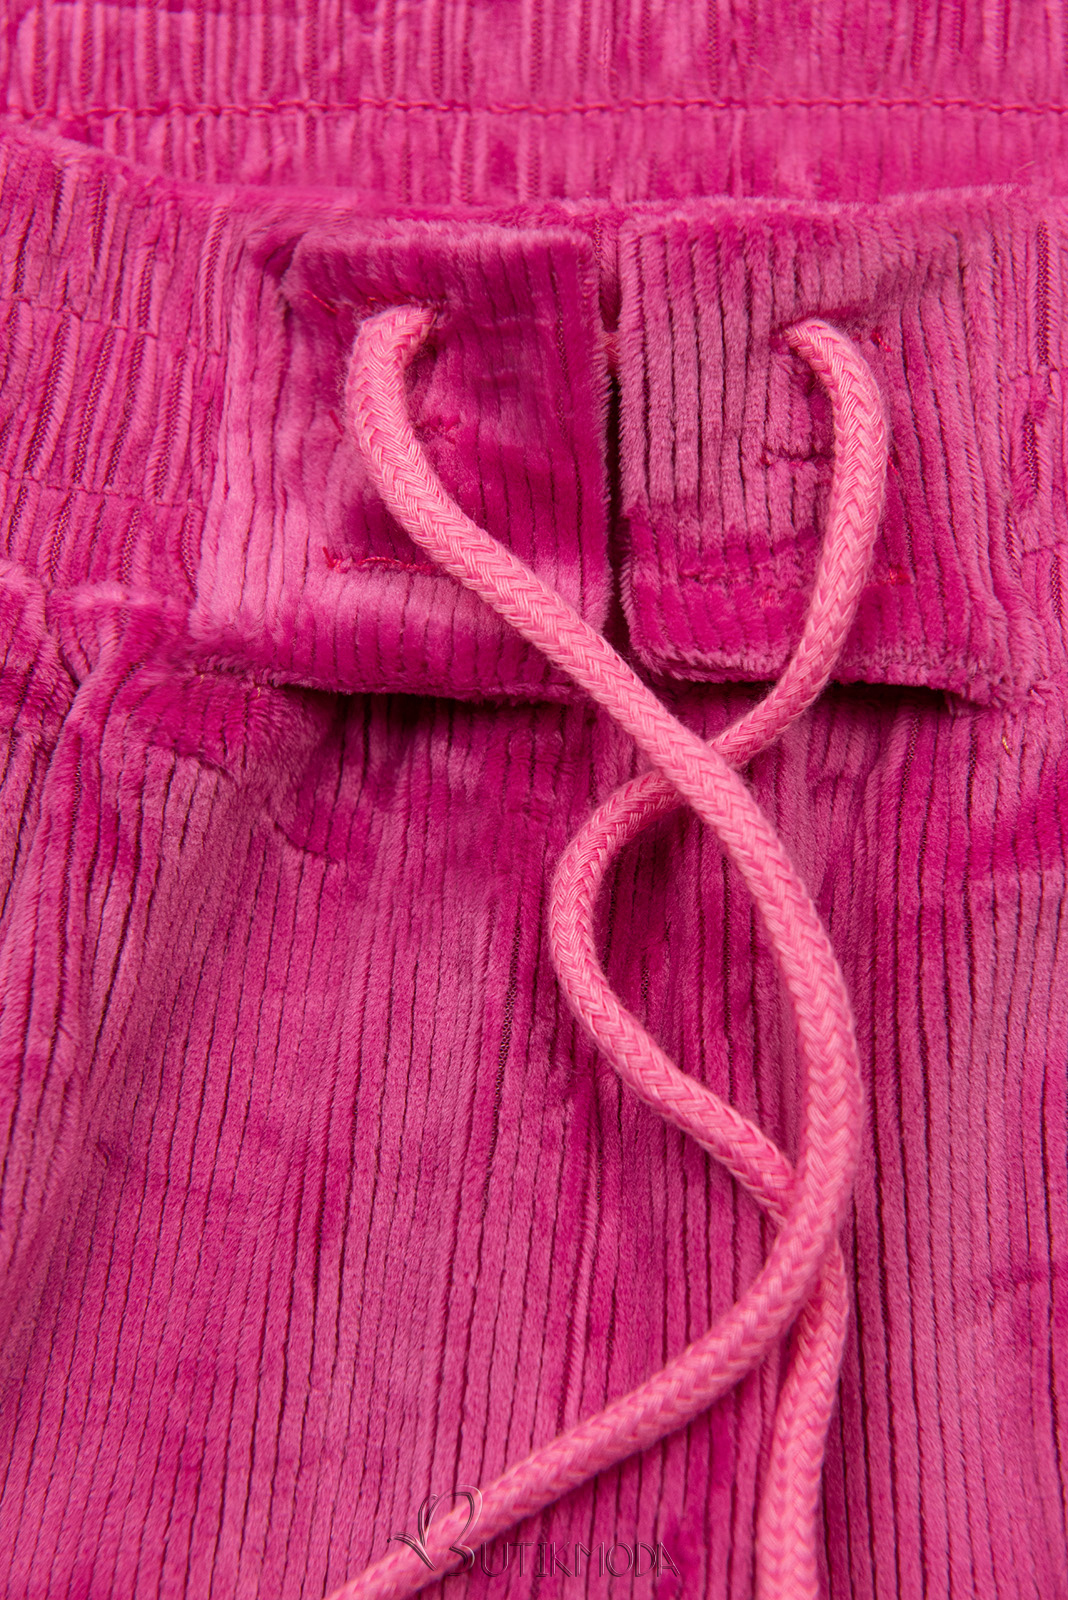 Pantaloni roz cu șireturi în talie